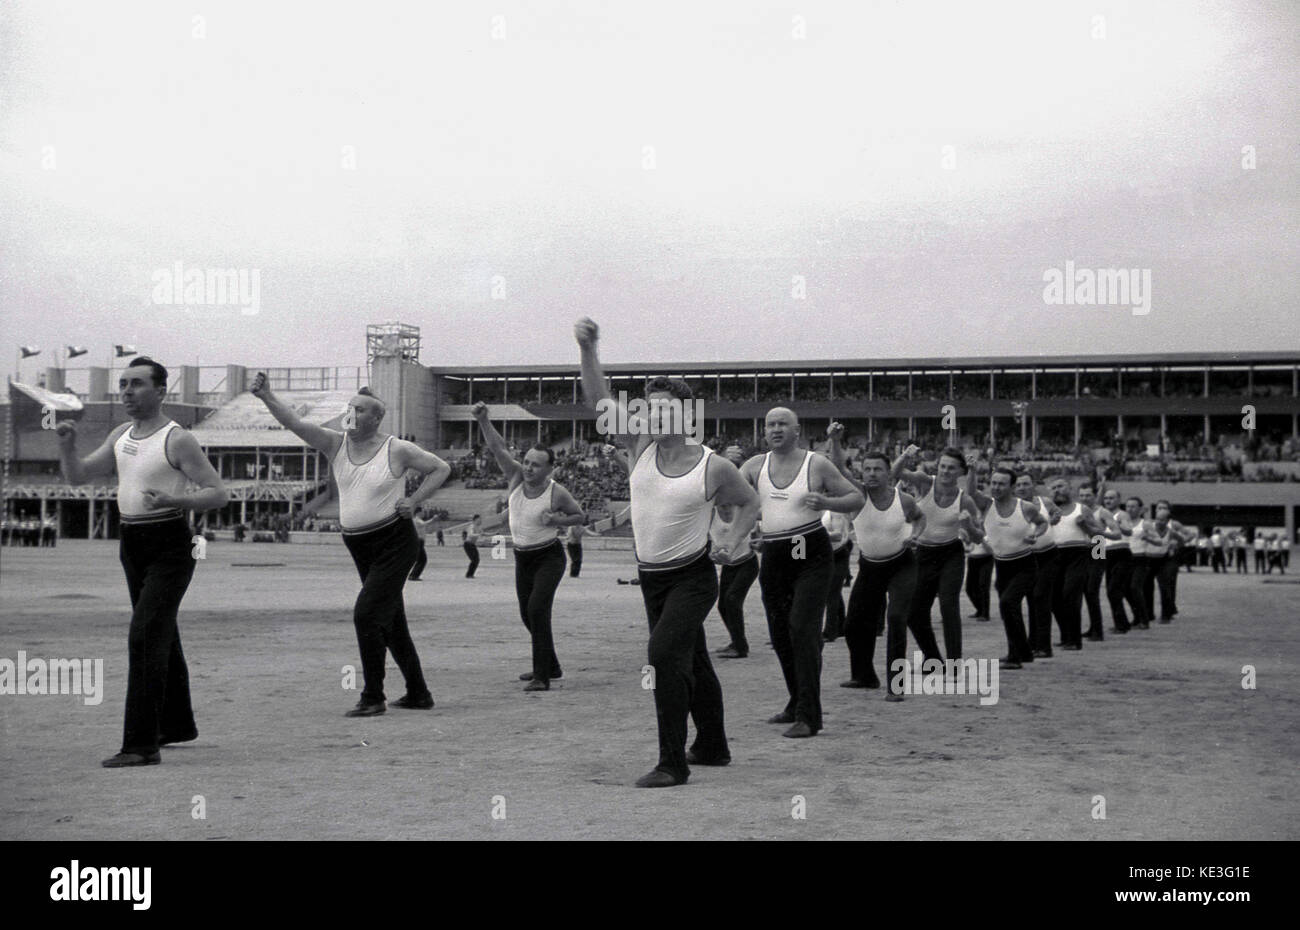 1938. histórico, el deporte, los varones participantes en el inmenso estadio de Strahov, en Praga, Checoslovaquia, tomando parte en el festival internacional Pan-Sokol Slet. Foto de stock